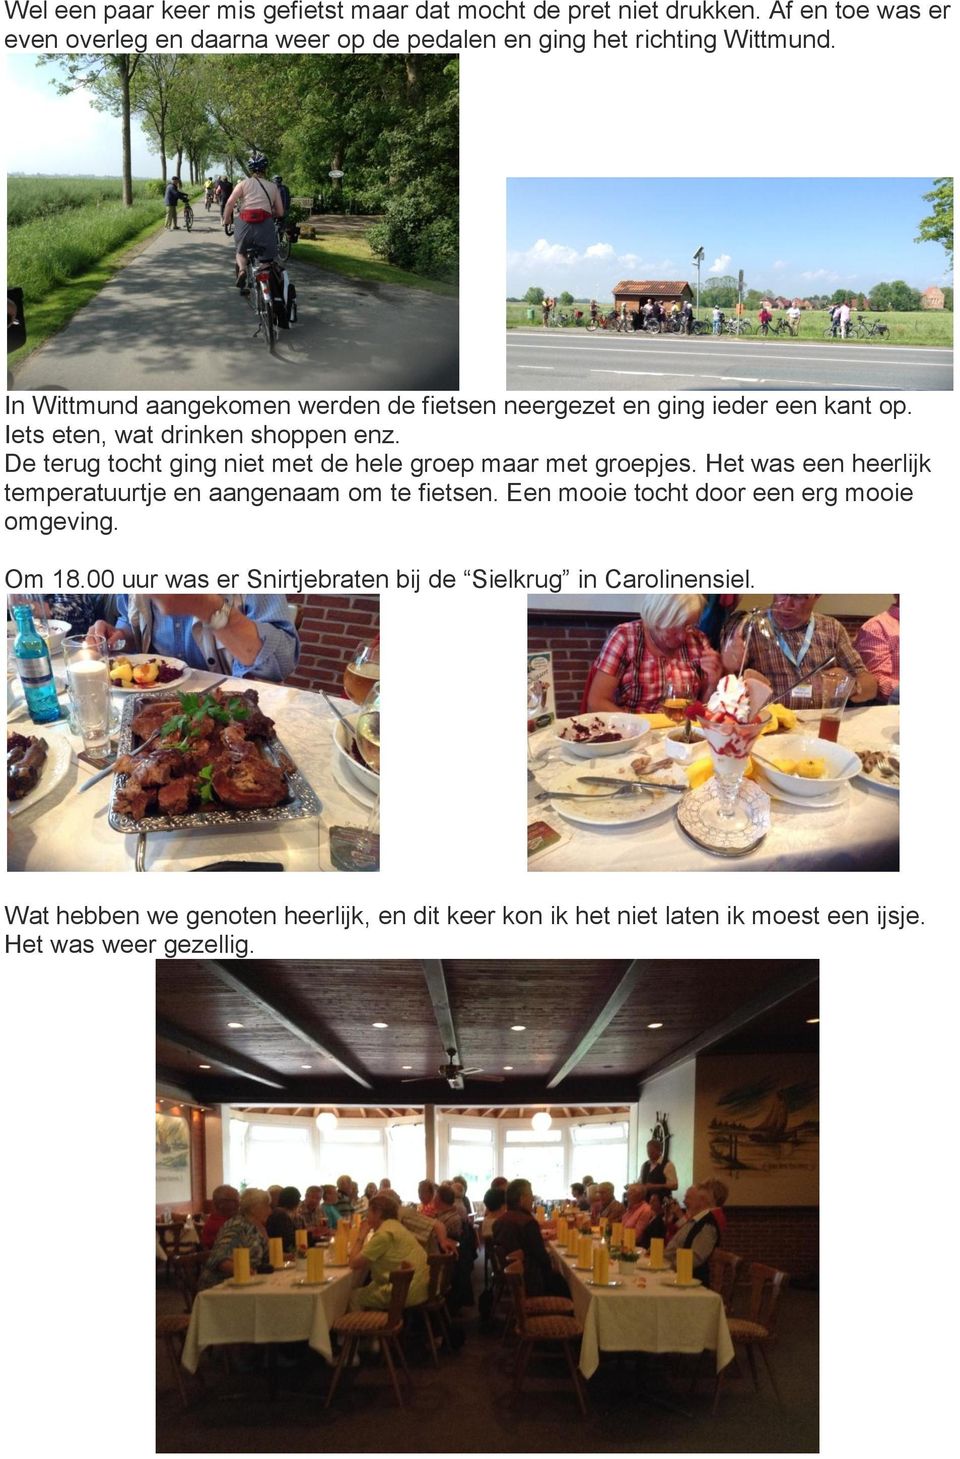 In Wittmund aangekomen werden de fietsen neergezet en ging ieder een kant op. Iets eten, wat drinken shoppen enz.